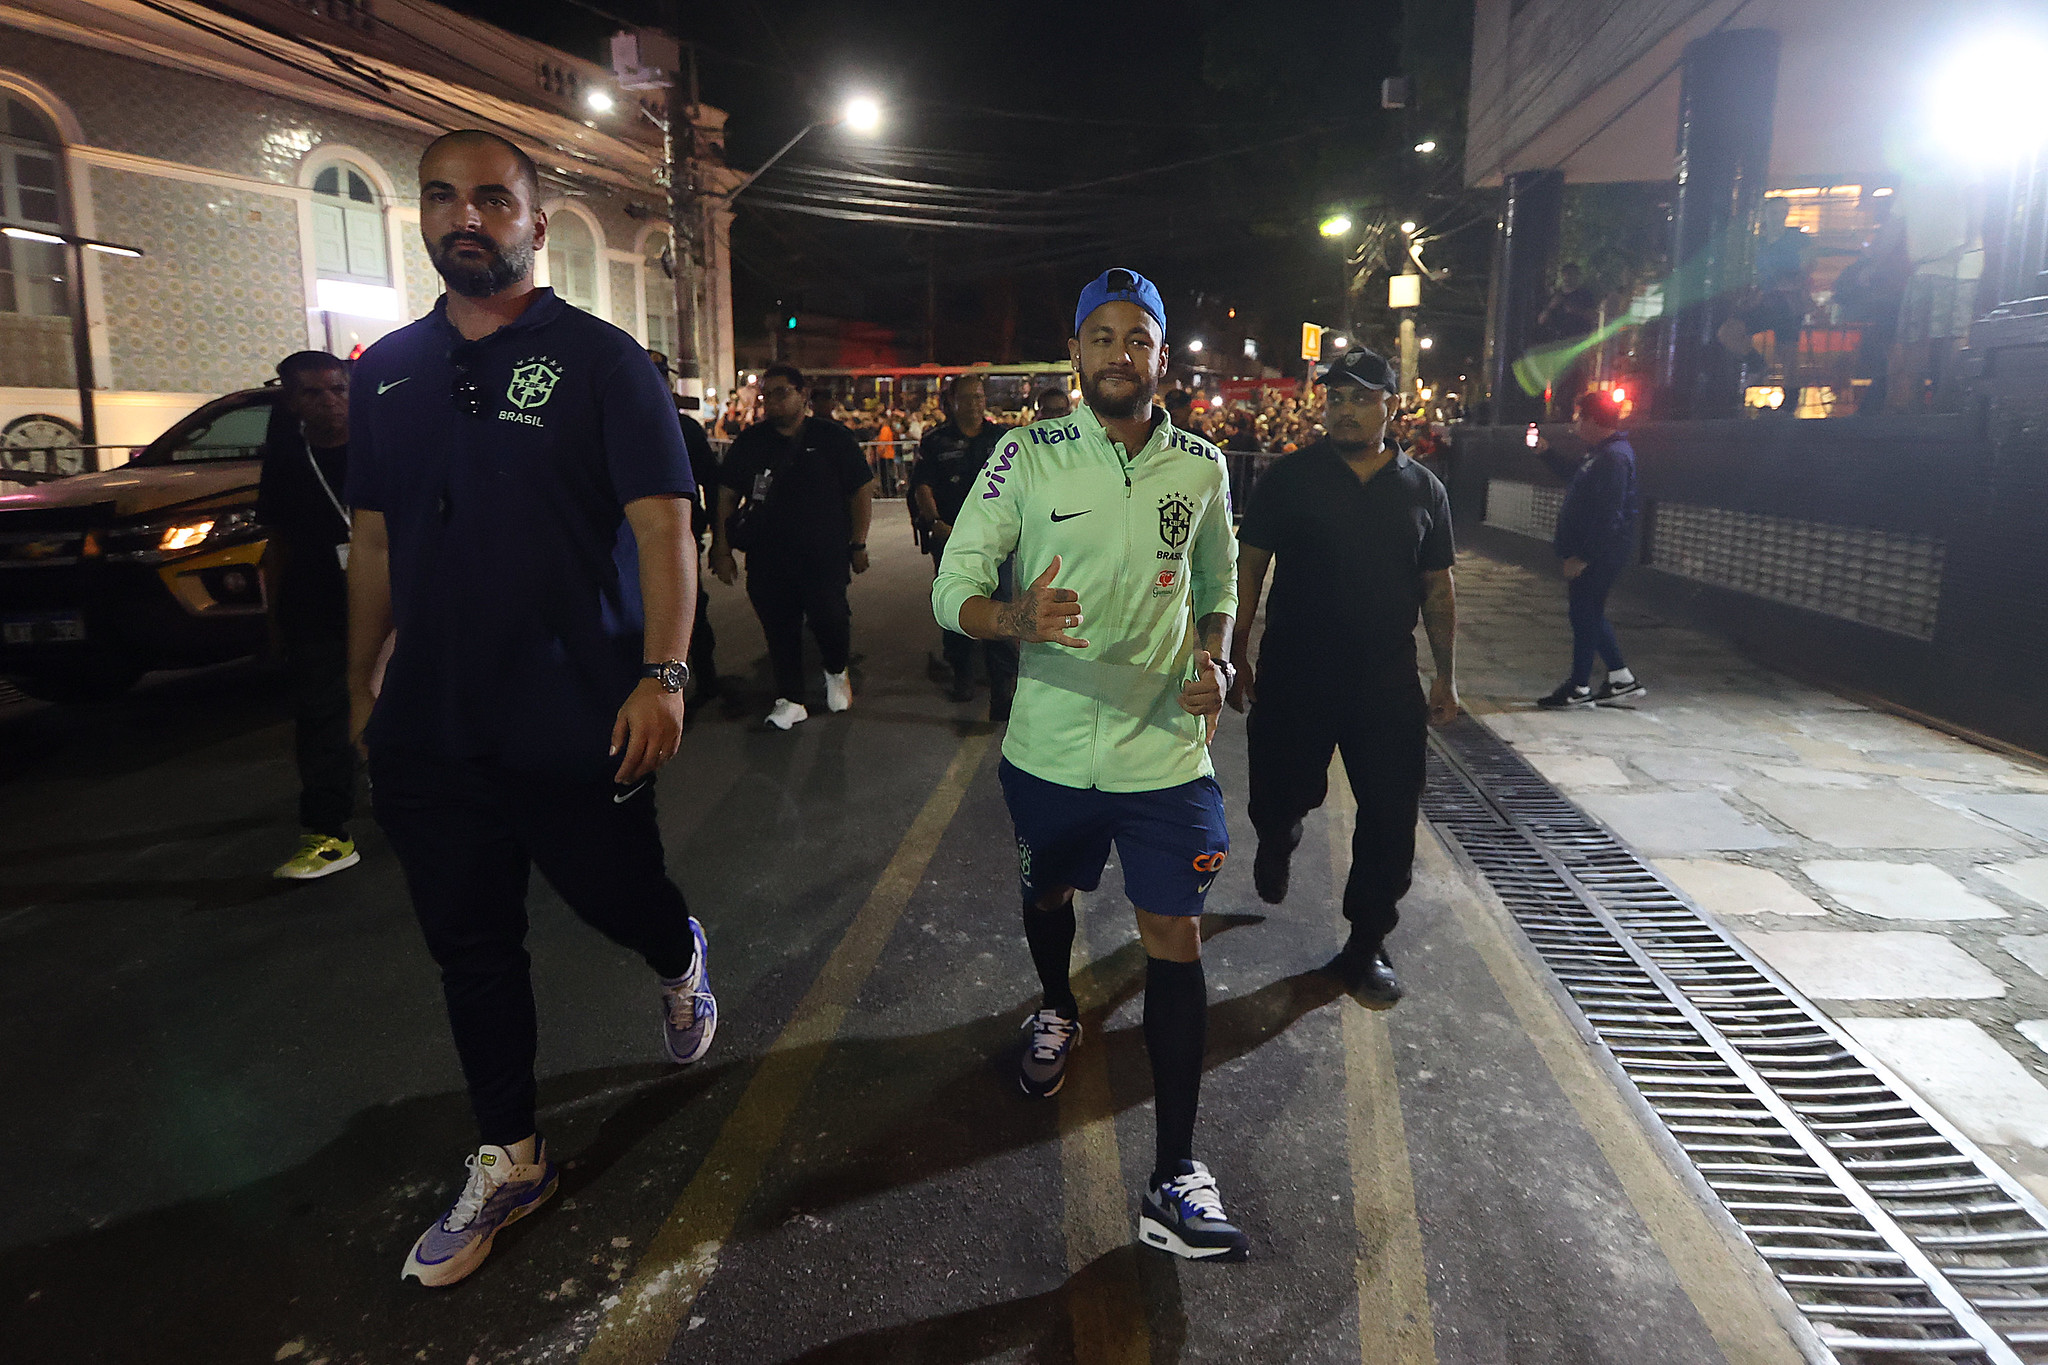 
        
        
            Neymar anda pela avenida Nazaré e é ovacionado em Belém
        
    